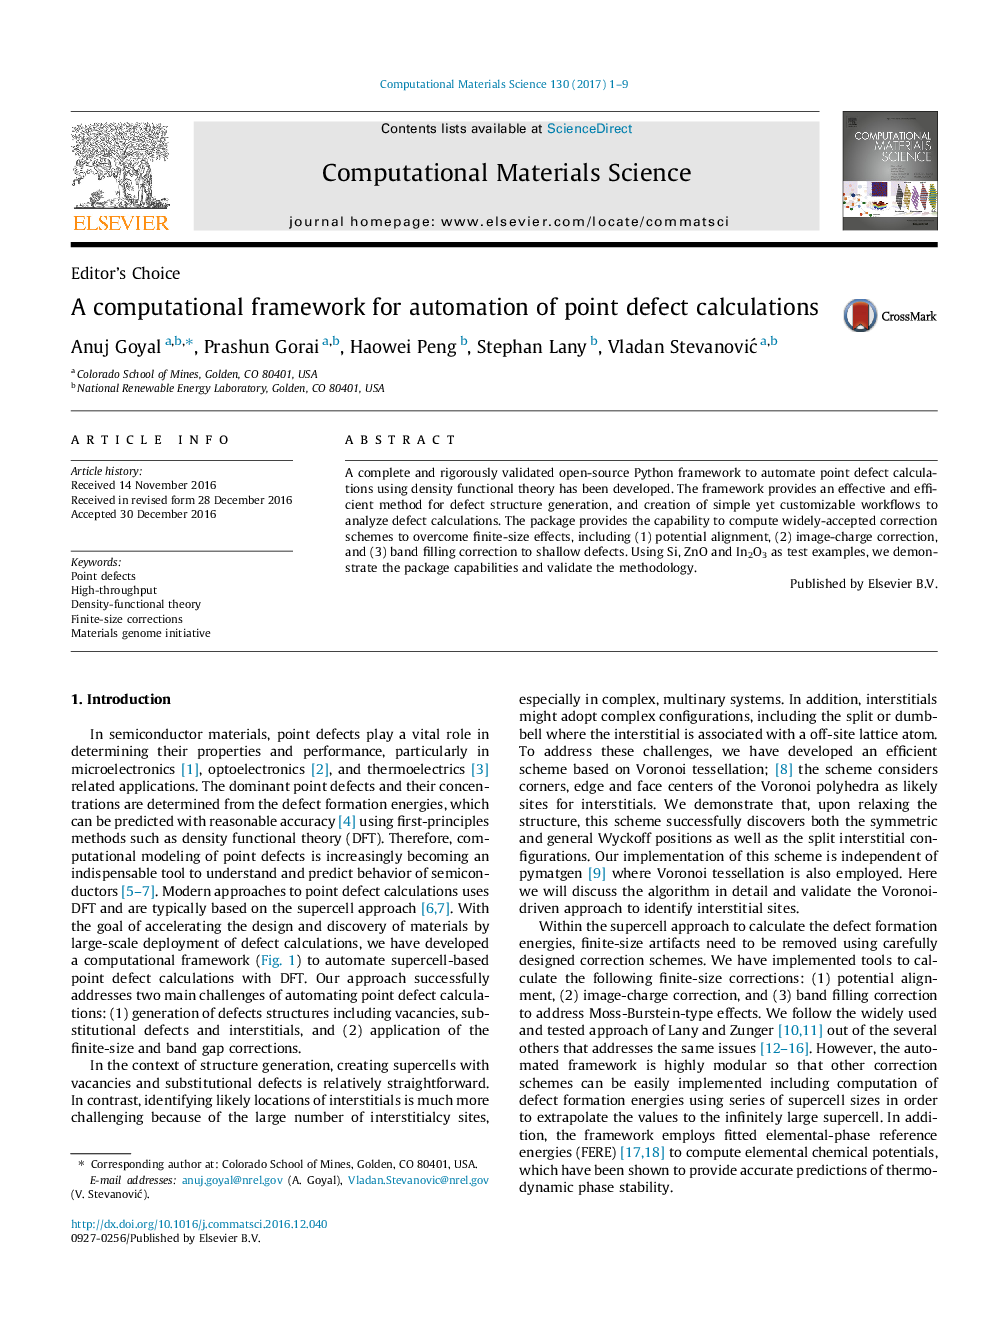 یک چارچوب محاسباتی برای اتوماسیون نقاط نقطه 